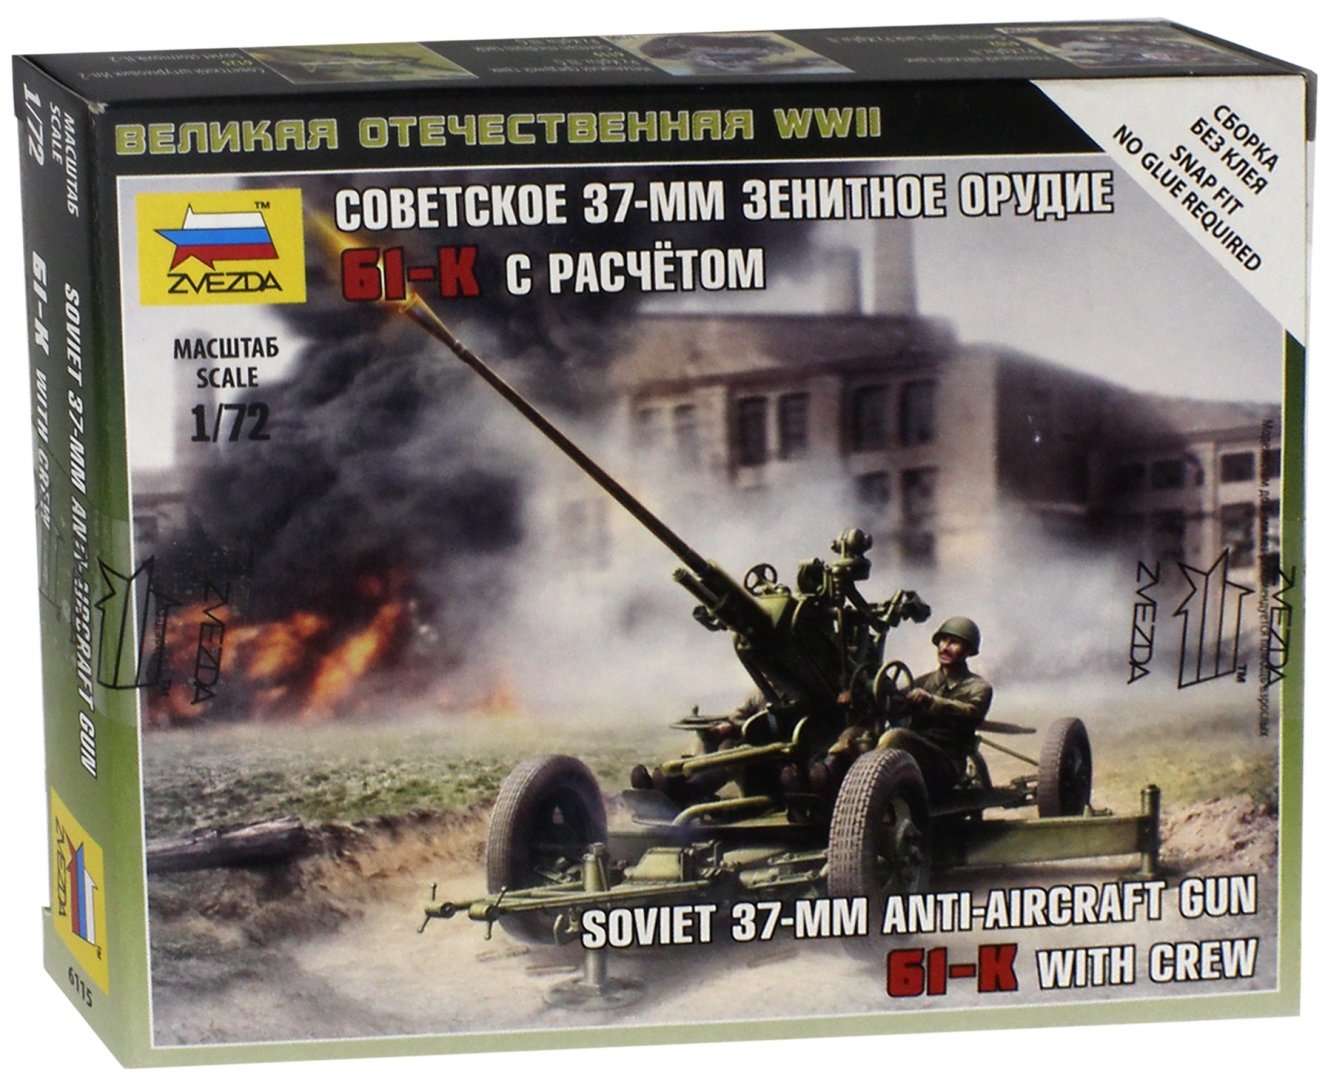 Иллюстрация 1 из 10 для Сборная модель "Советское 37-мм зенитное орудие 61-К с расчетом" (6115) | Лабиринт - игрушки. Источник: Лабиринт